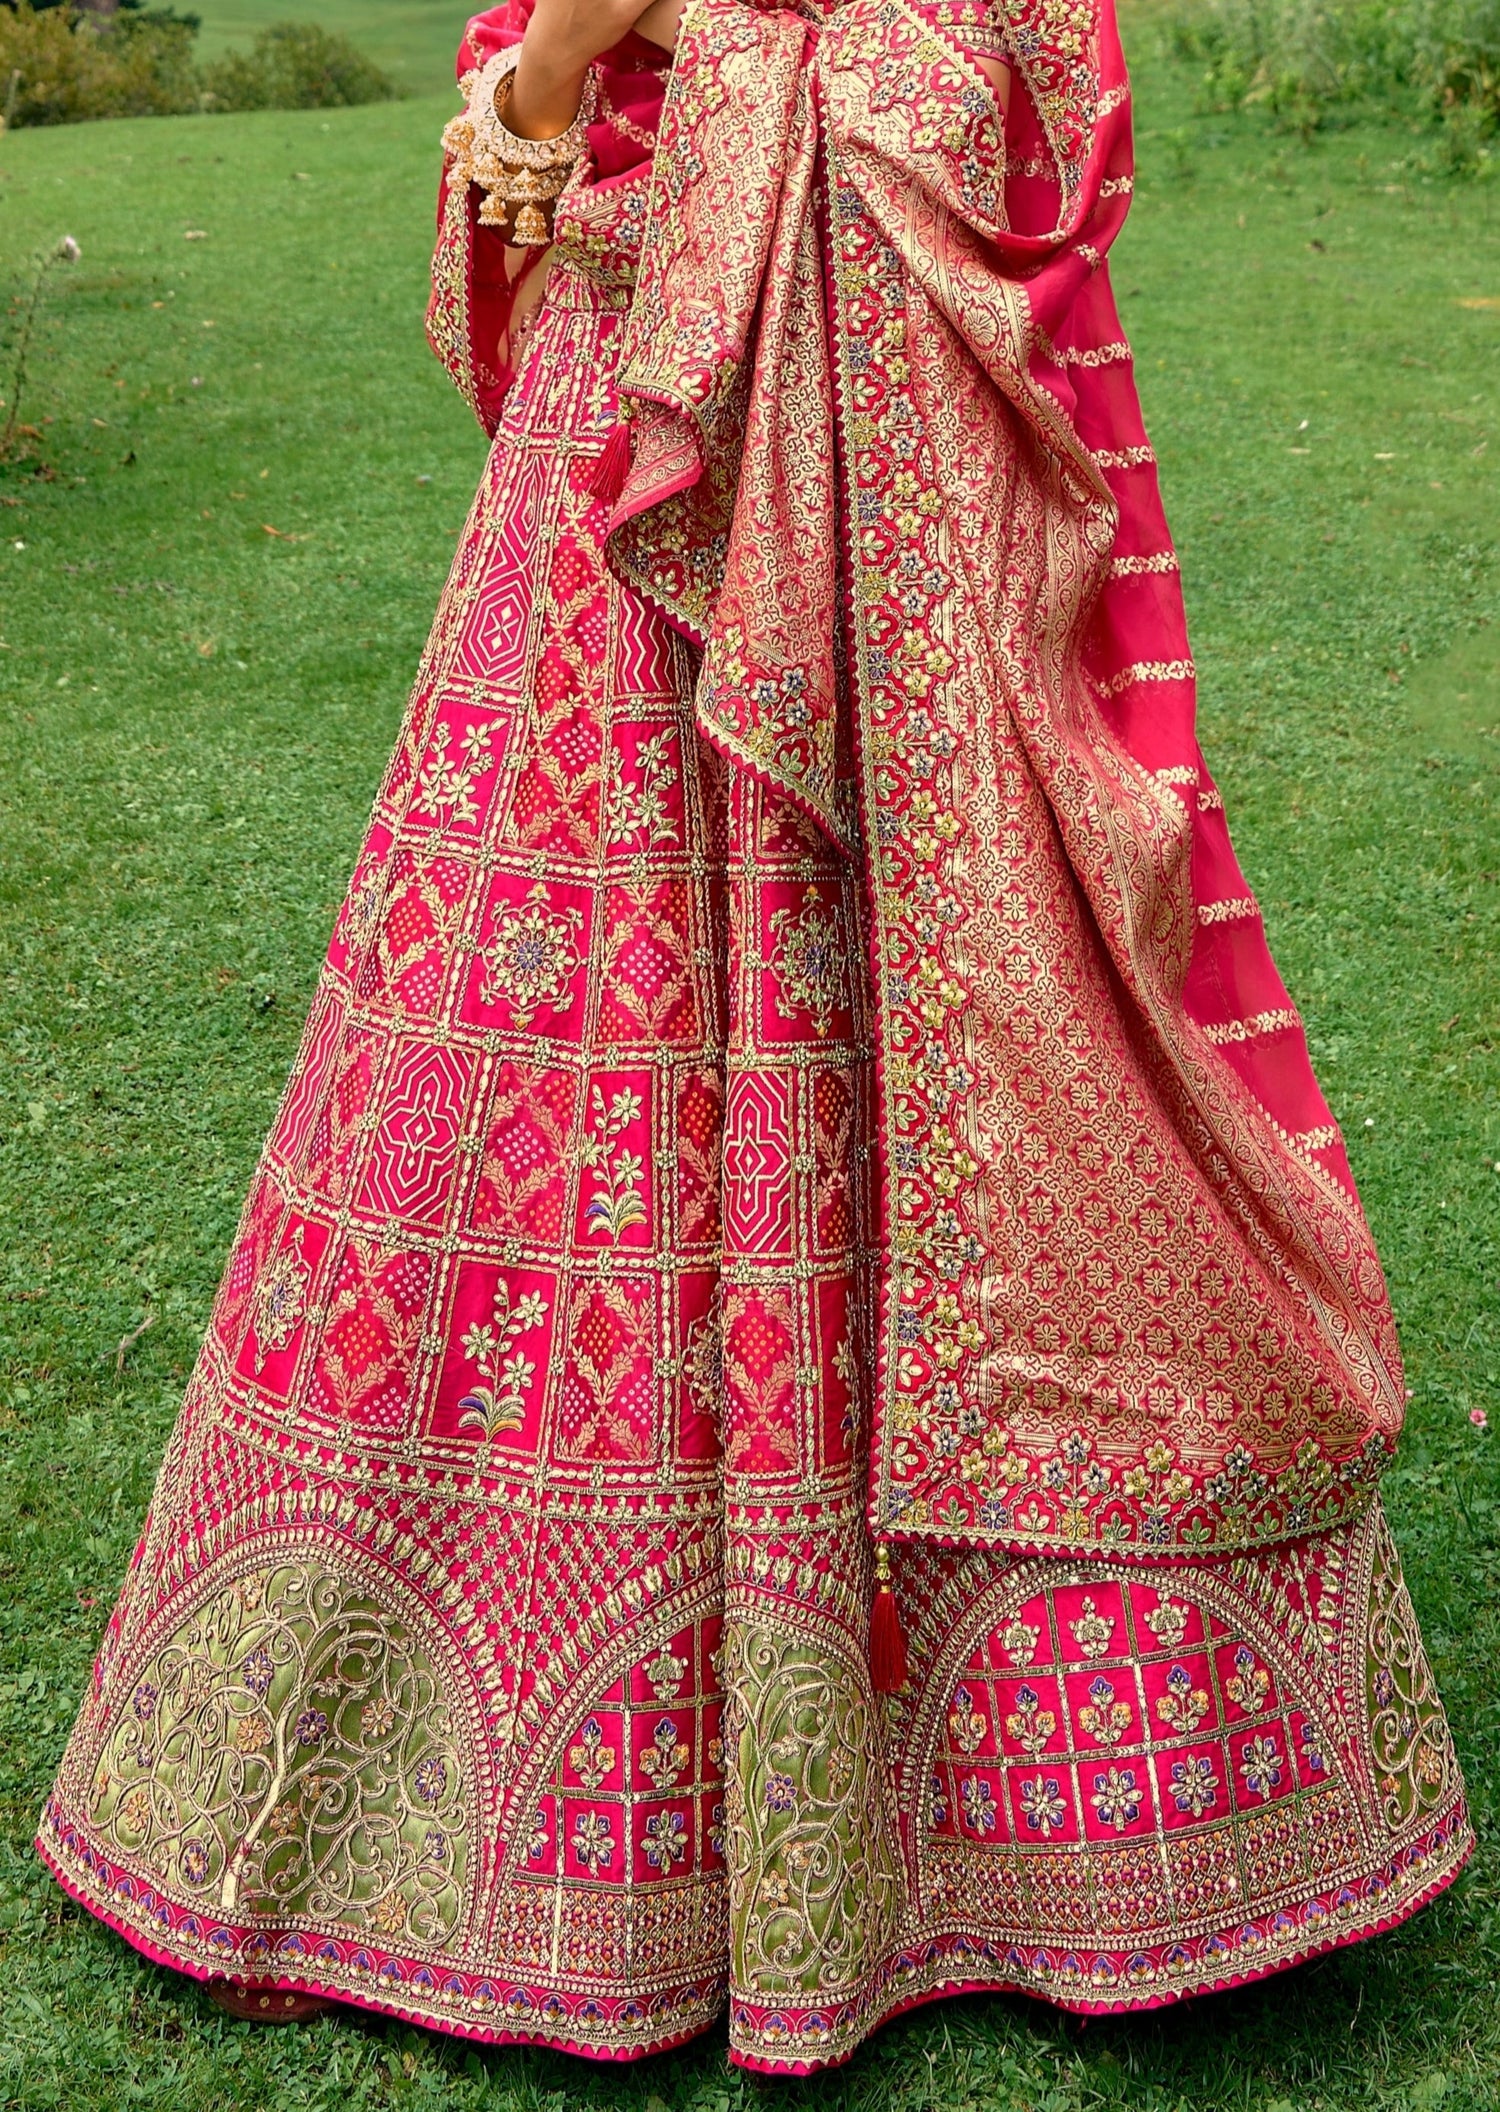 Buy Devorium Women's Chiffon Embroidered Semi-Stitched Lehenga Choli with  Dupatta (1961-Red-Wedding-Girlish-Latest-Lehenga; Free Size) at Amazon.in